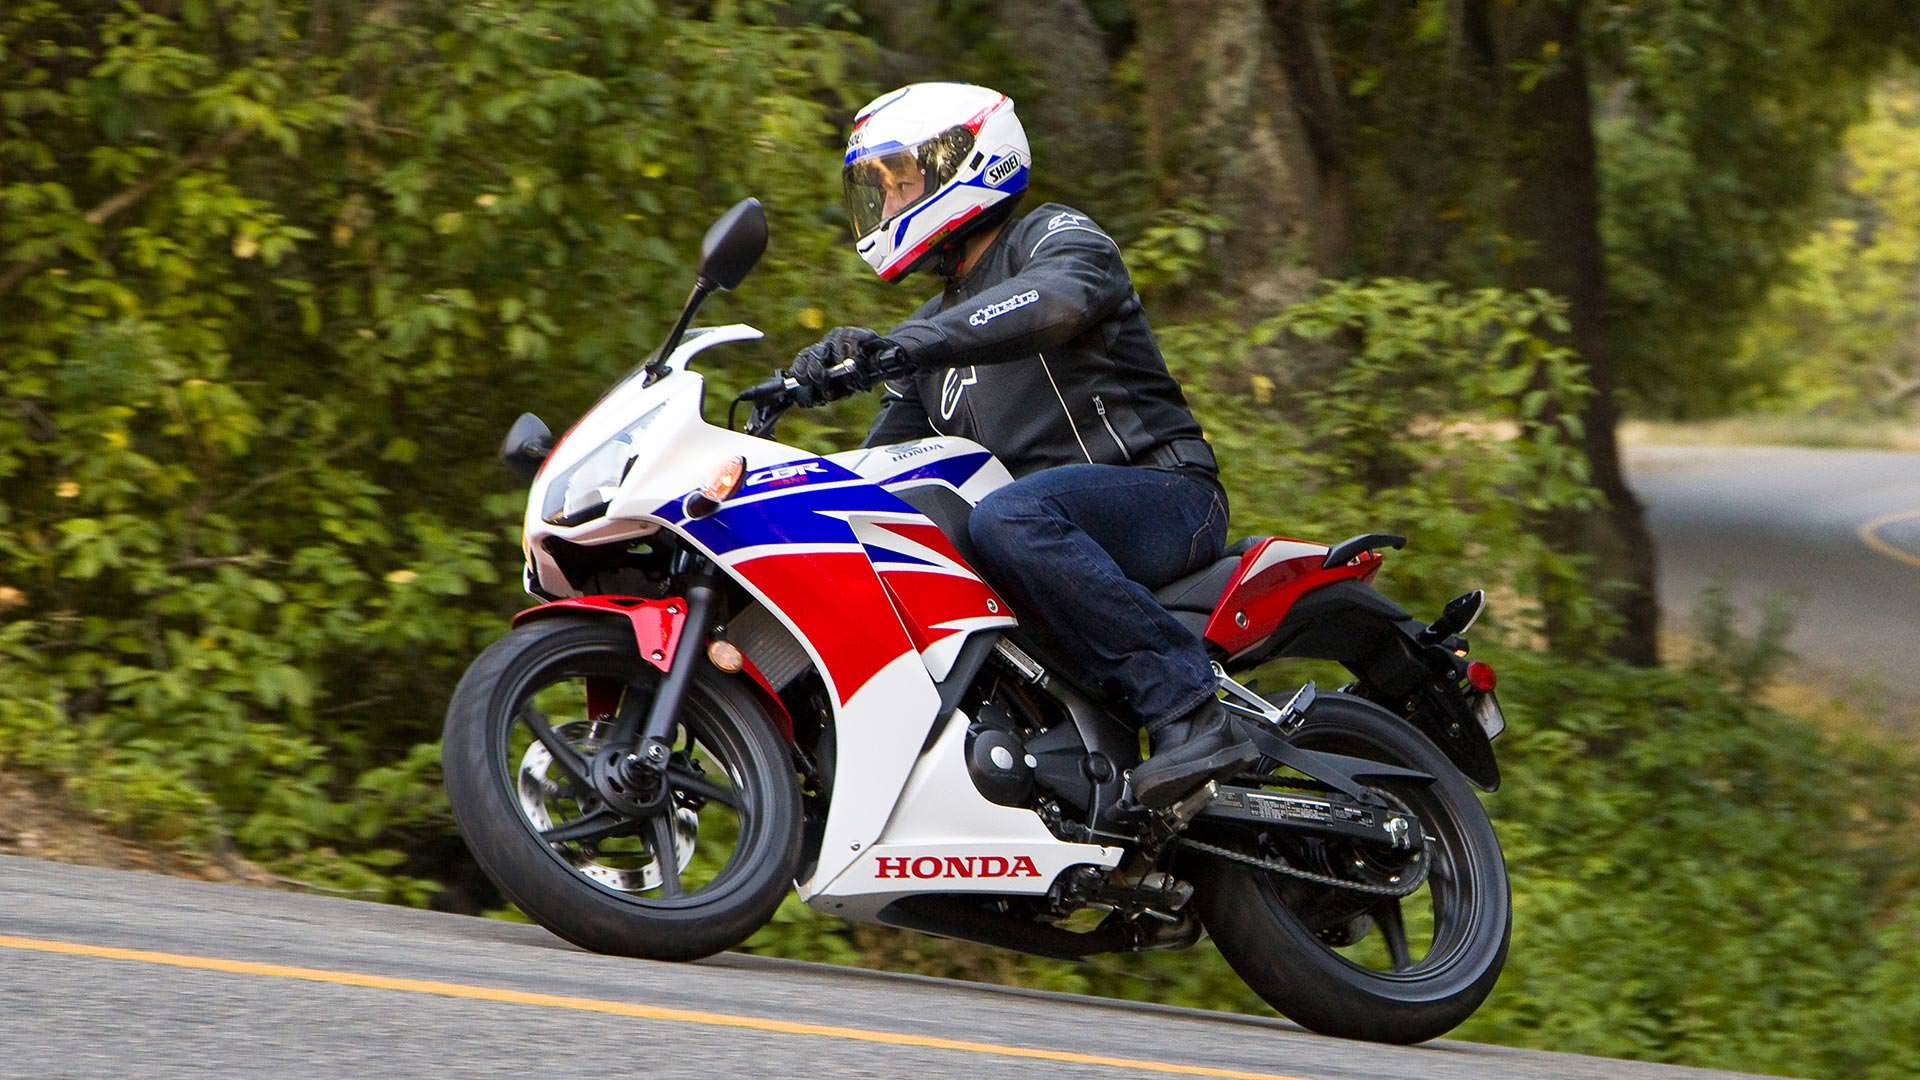 Honda rebel cmx500, обзор 2020, тест драйв, технические характерстики, фото